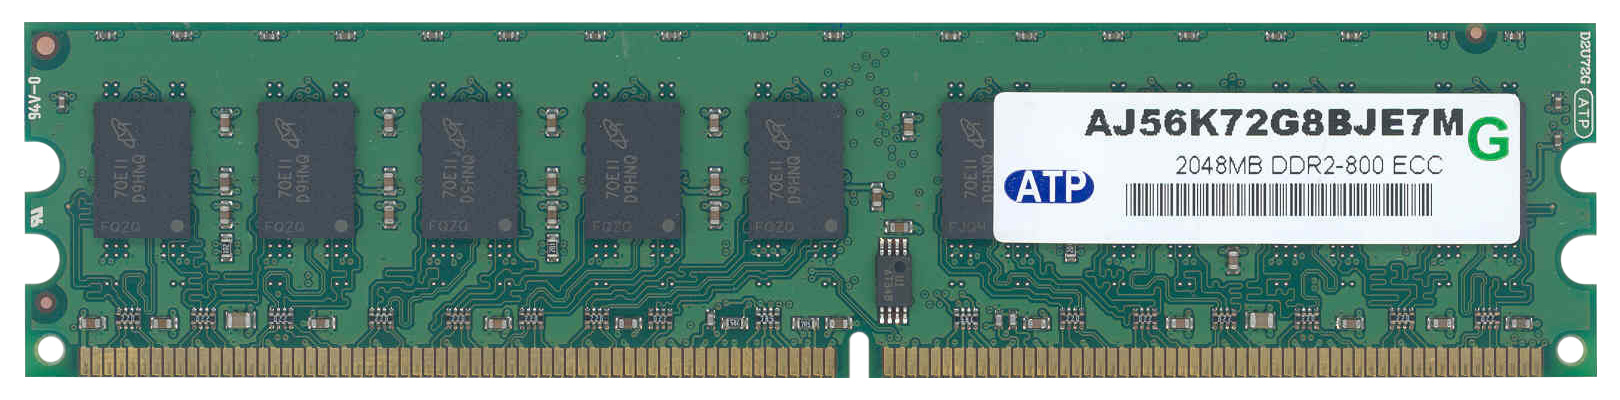 AJ56K72G8BJE7M ATP 2GB PC2-6400 DDR2-800MHz ECC Unbuffered CL6 240-Pin DIMM Memory Module